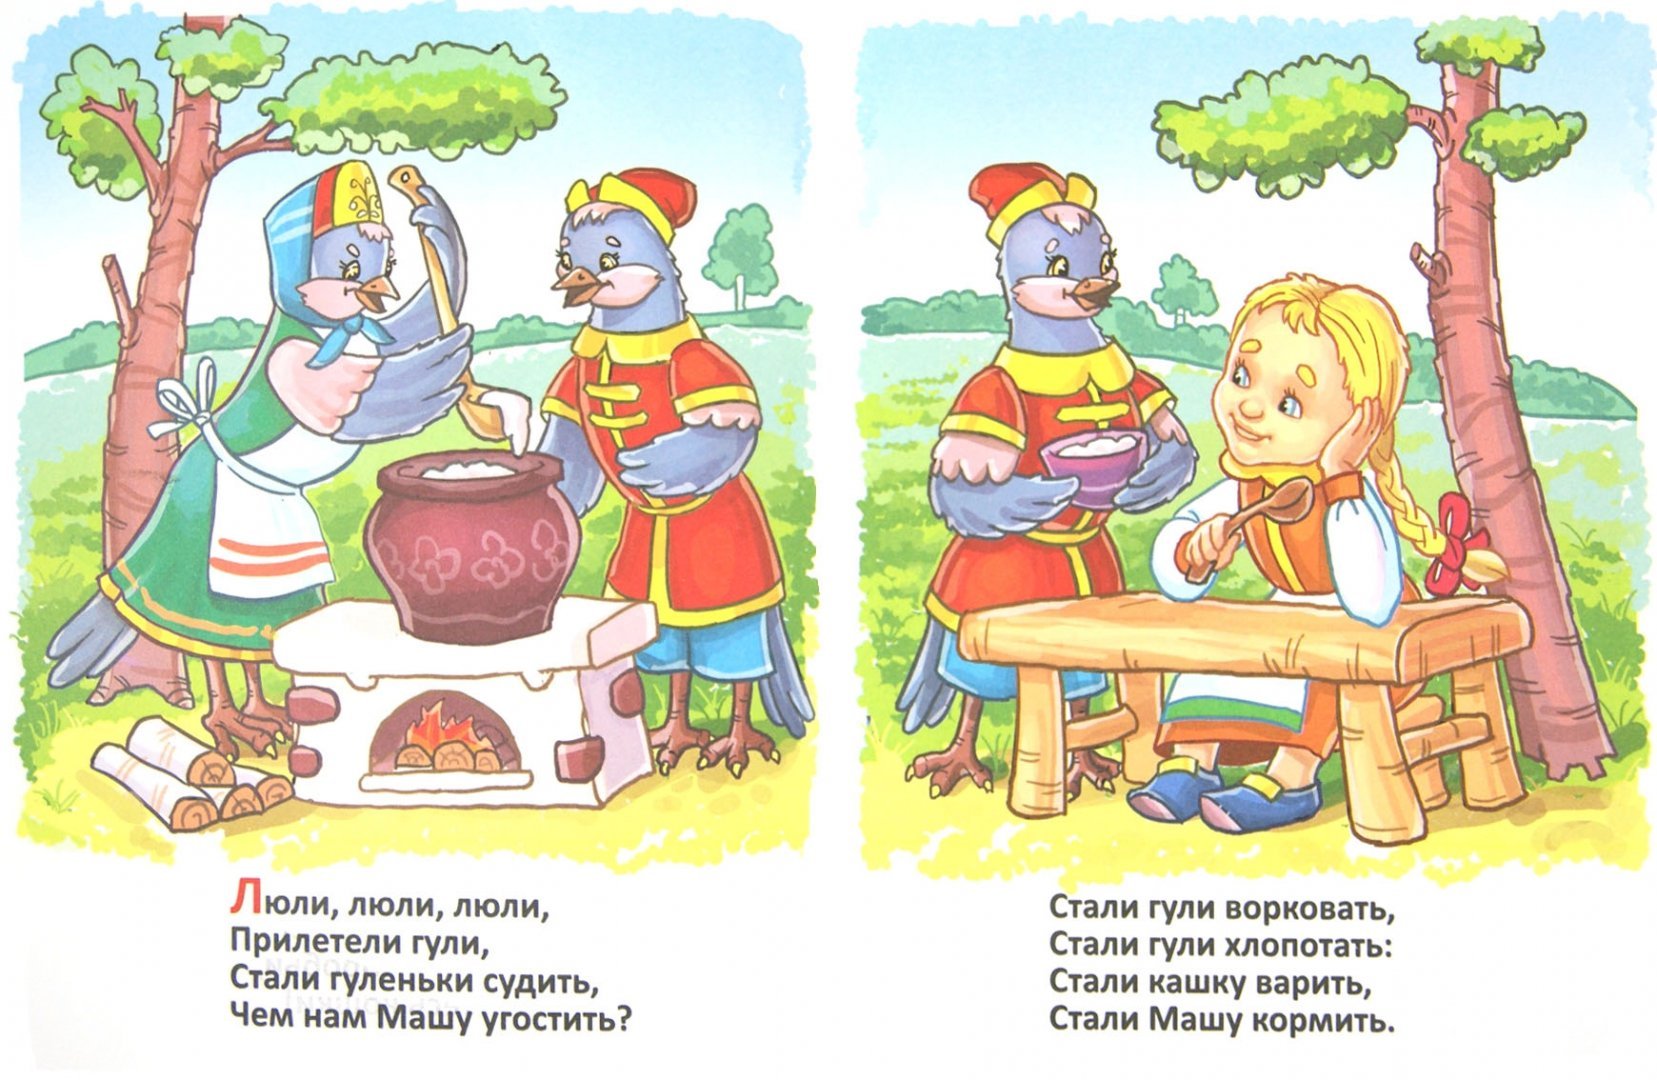 Иллюстрация русских народных потешек